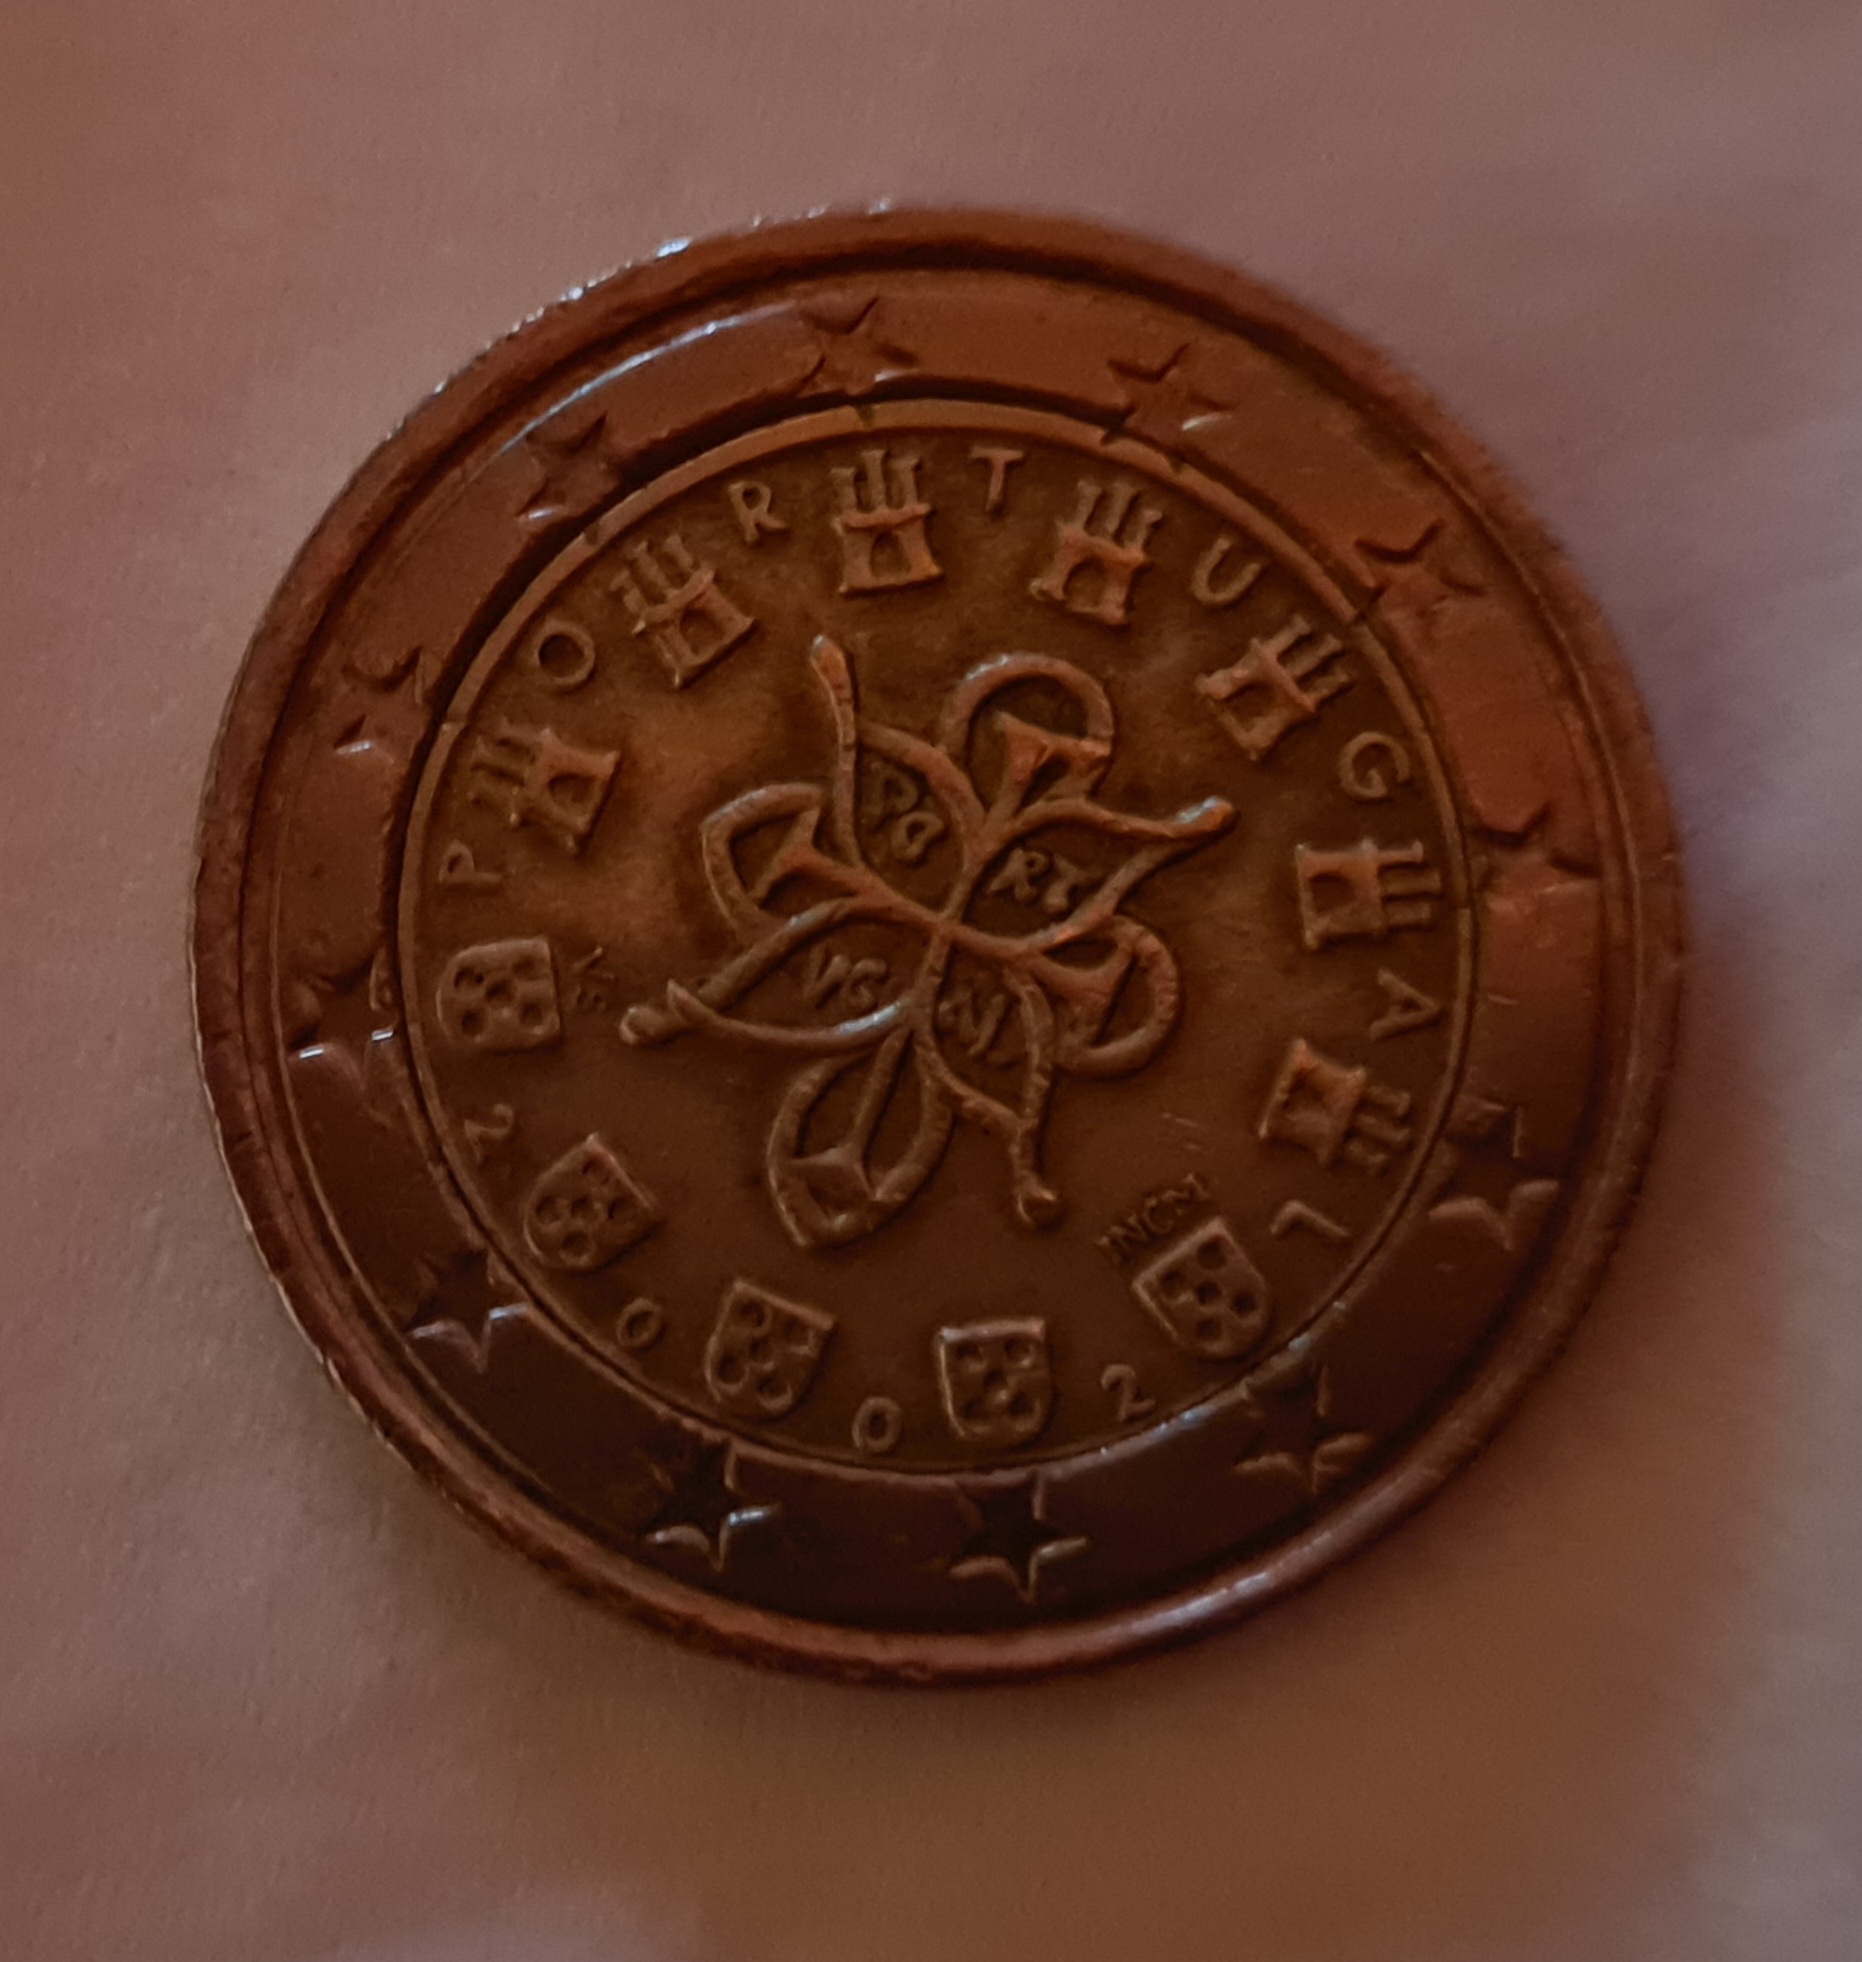 Value of this coin with mis-stamps – Wert dieser Münze mit Fehlprägungen